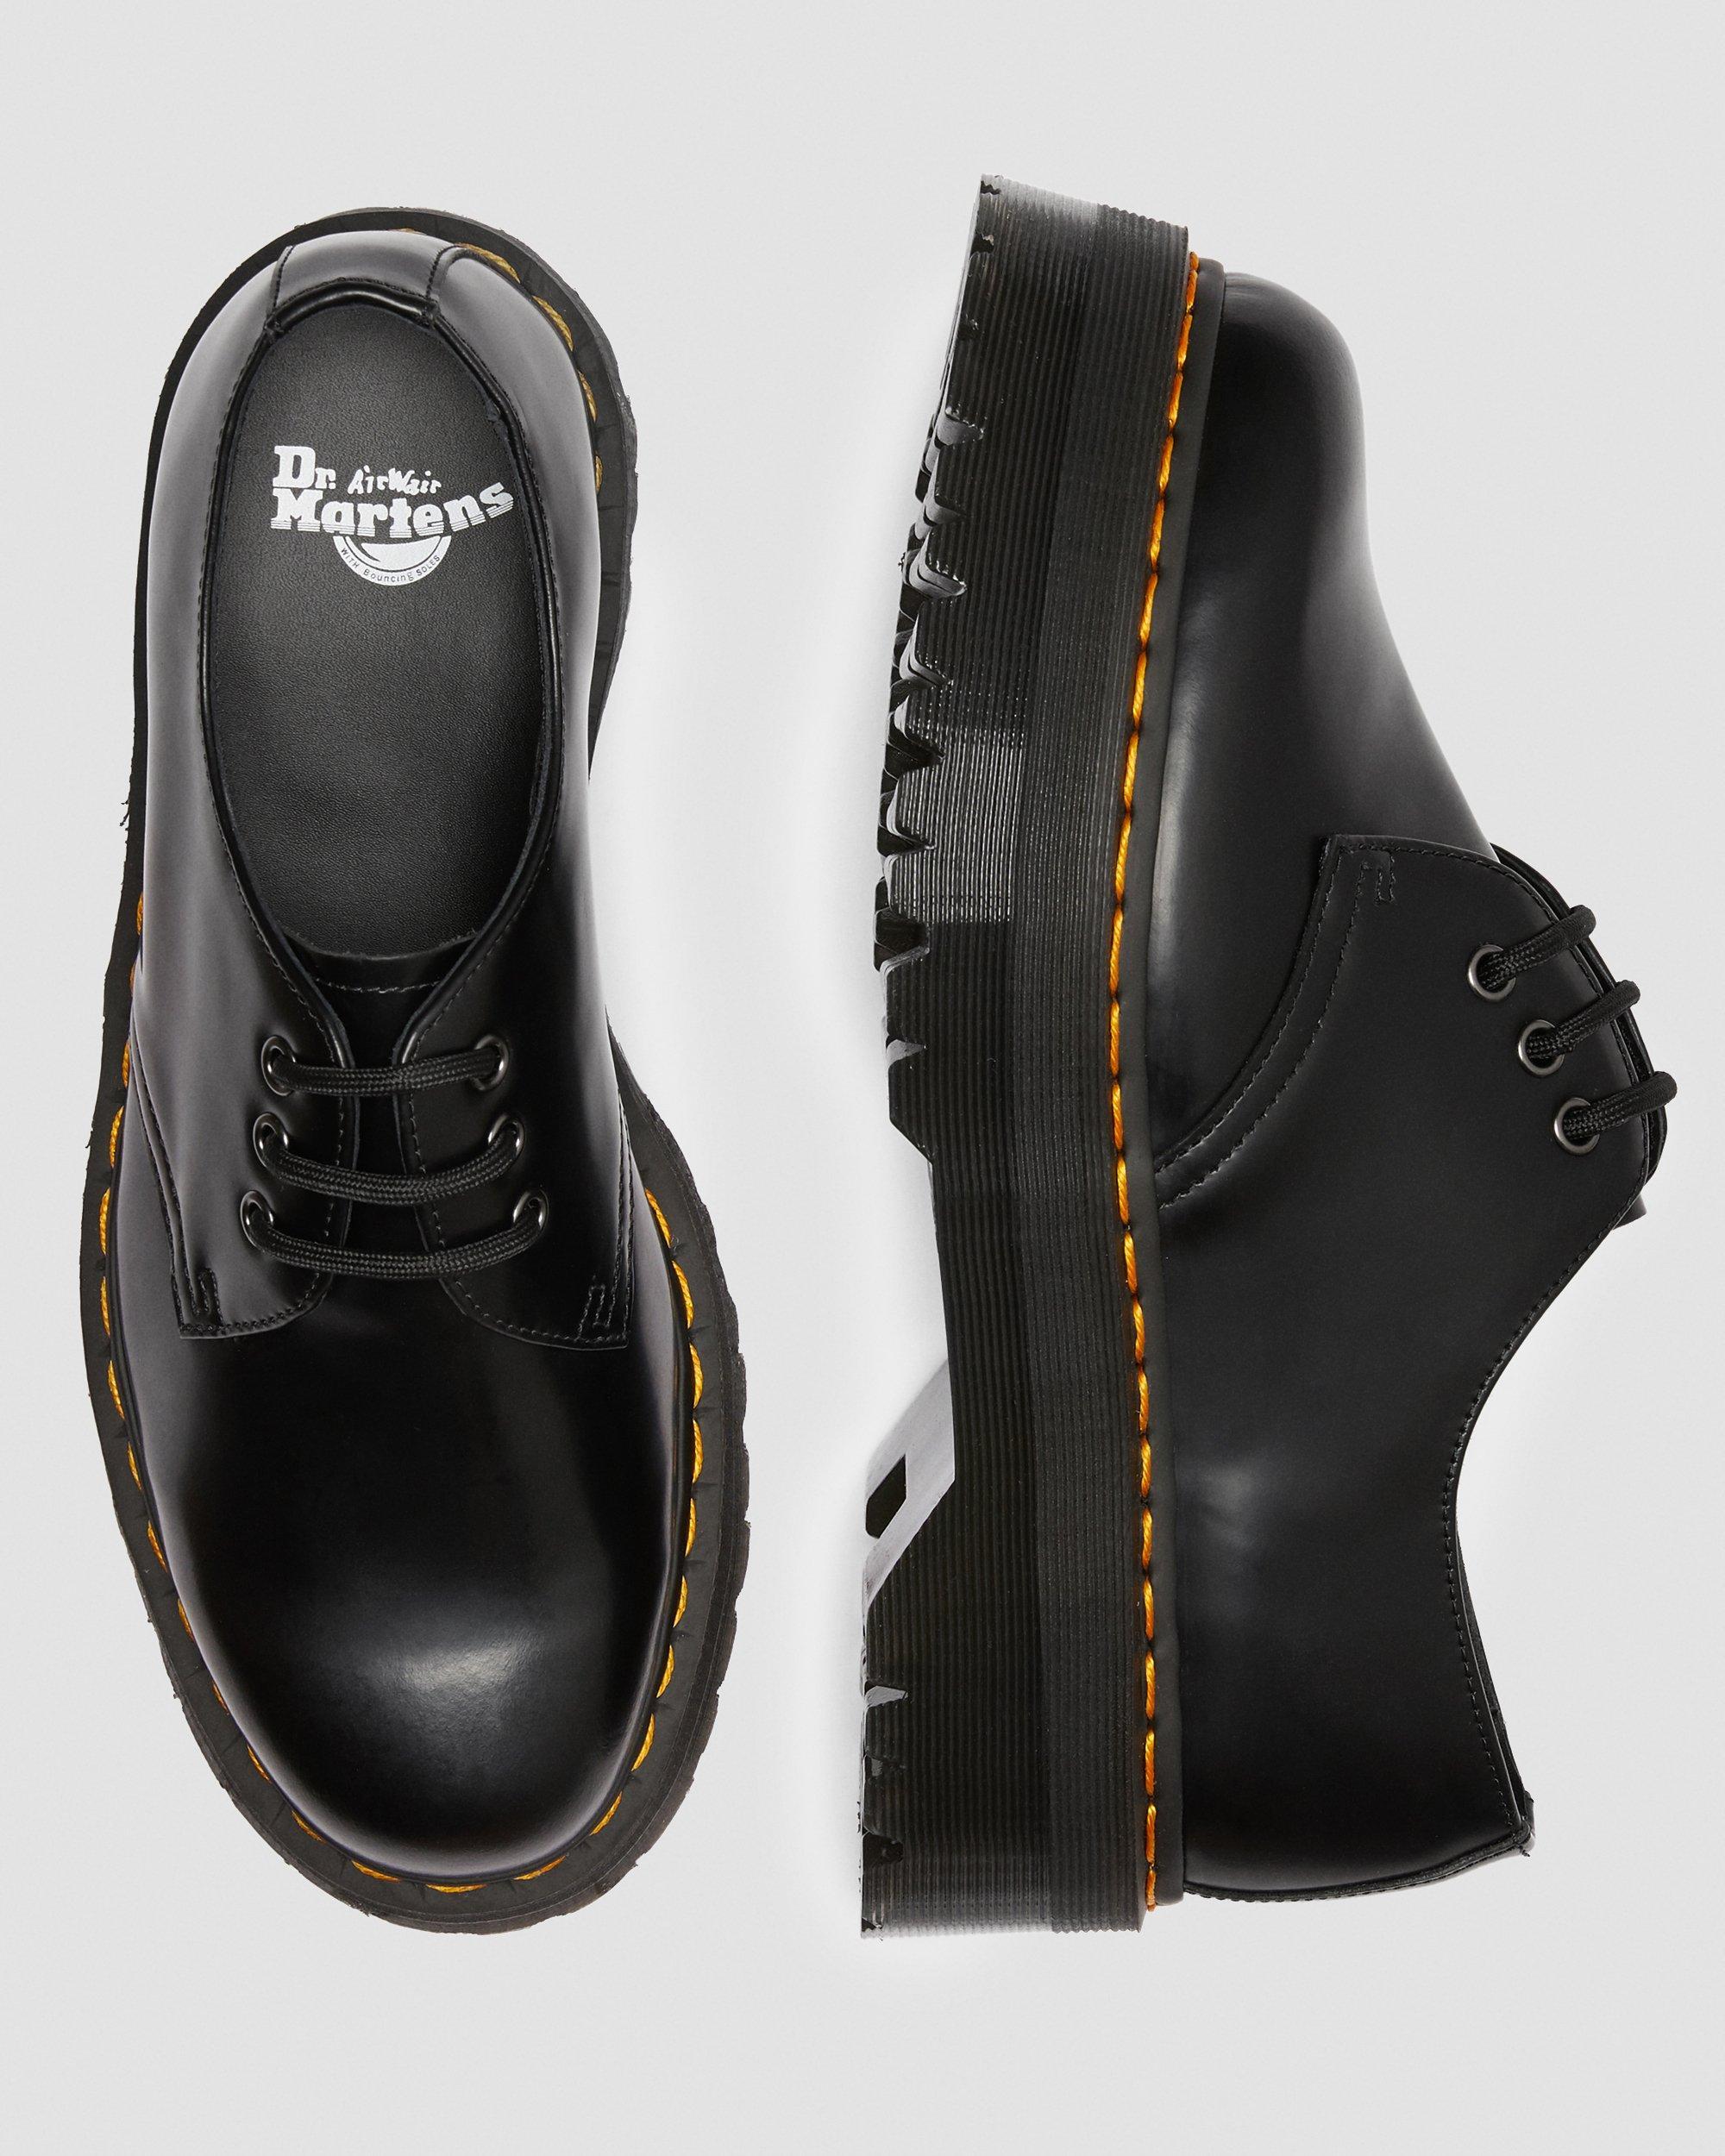 Dr. Martens 1461 Smooth Leather Platform Shoes in Black for Men - Lyst